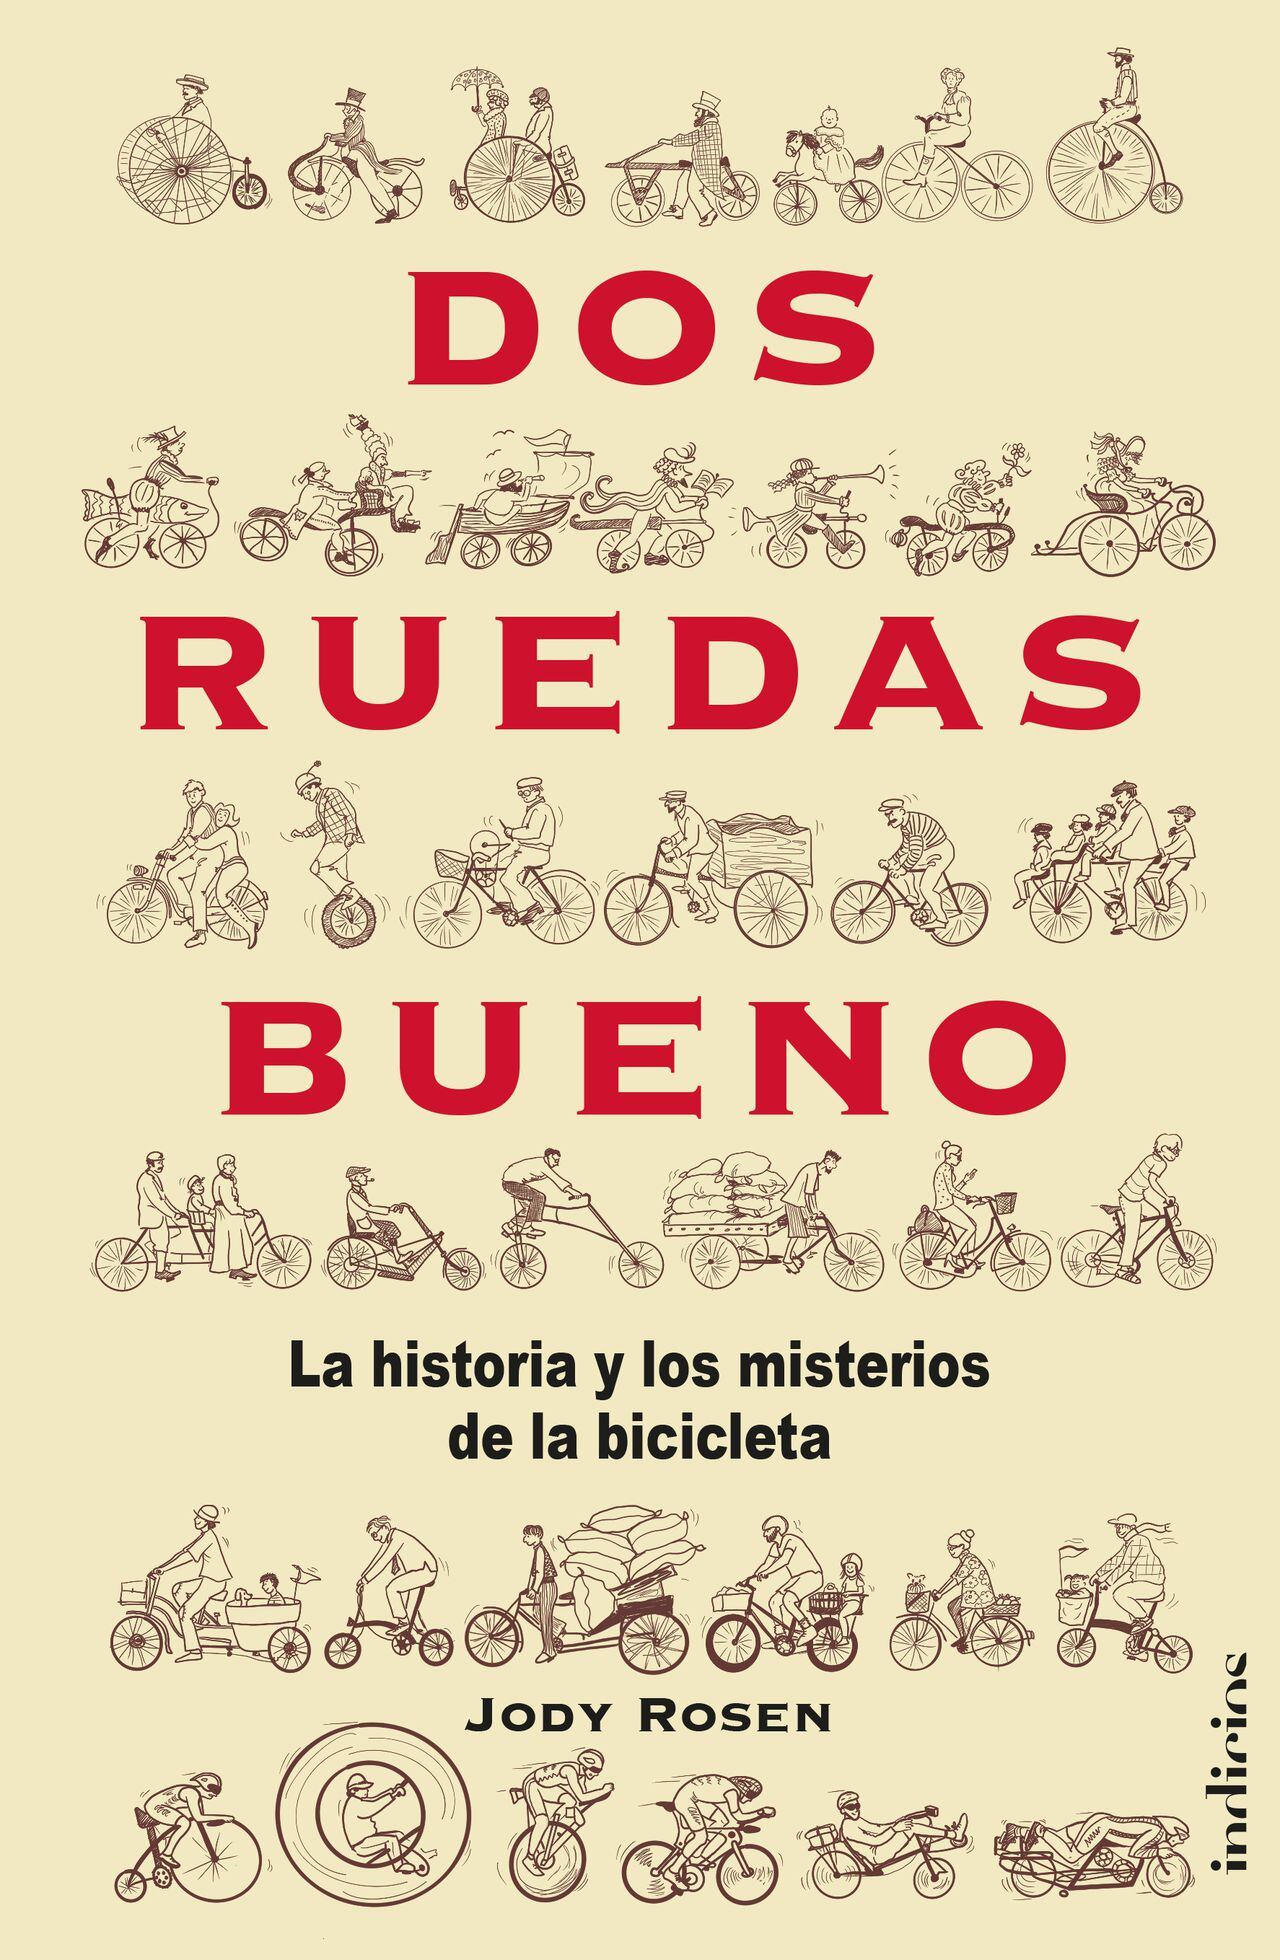 'Dos  ruedas bueno, la historia y los misterios de la bicicleta', por Jody Rosen